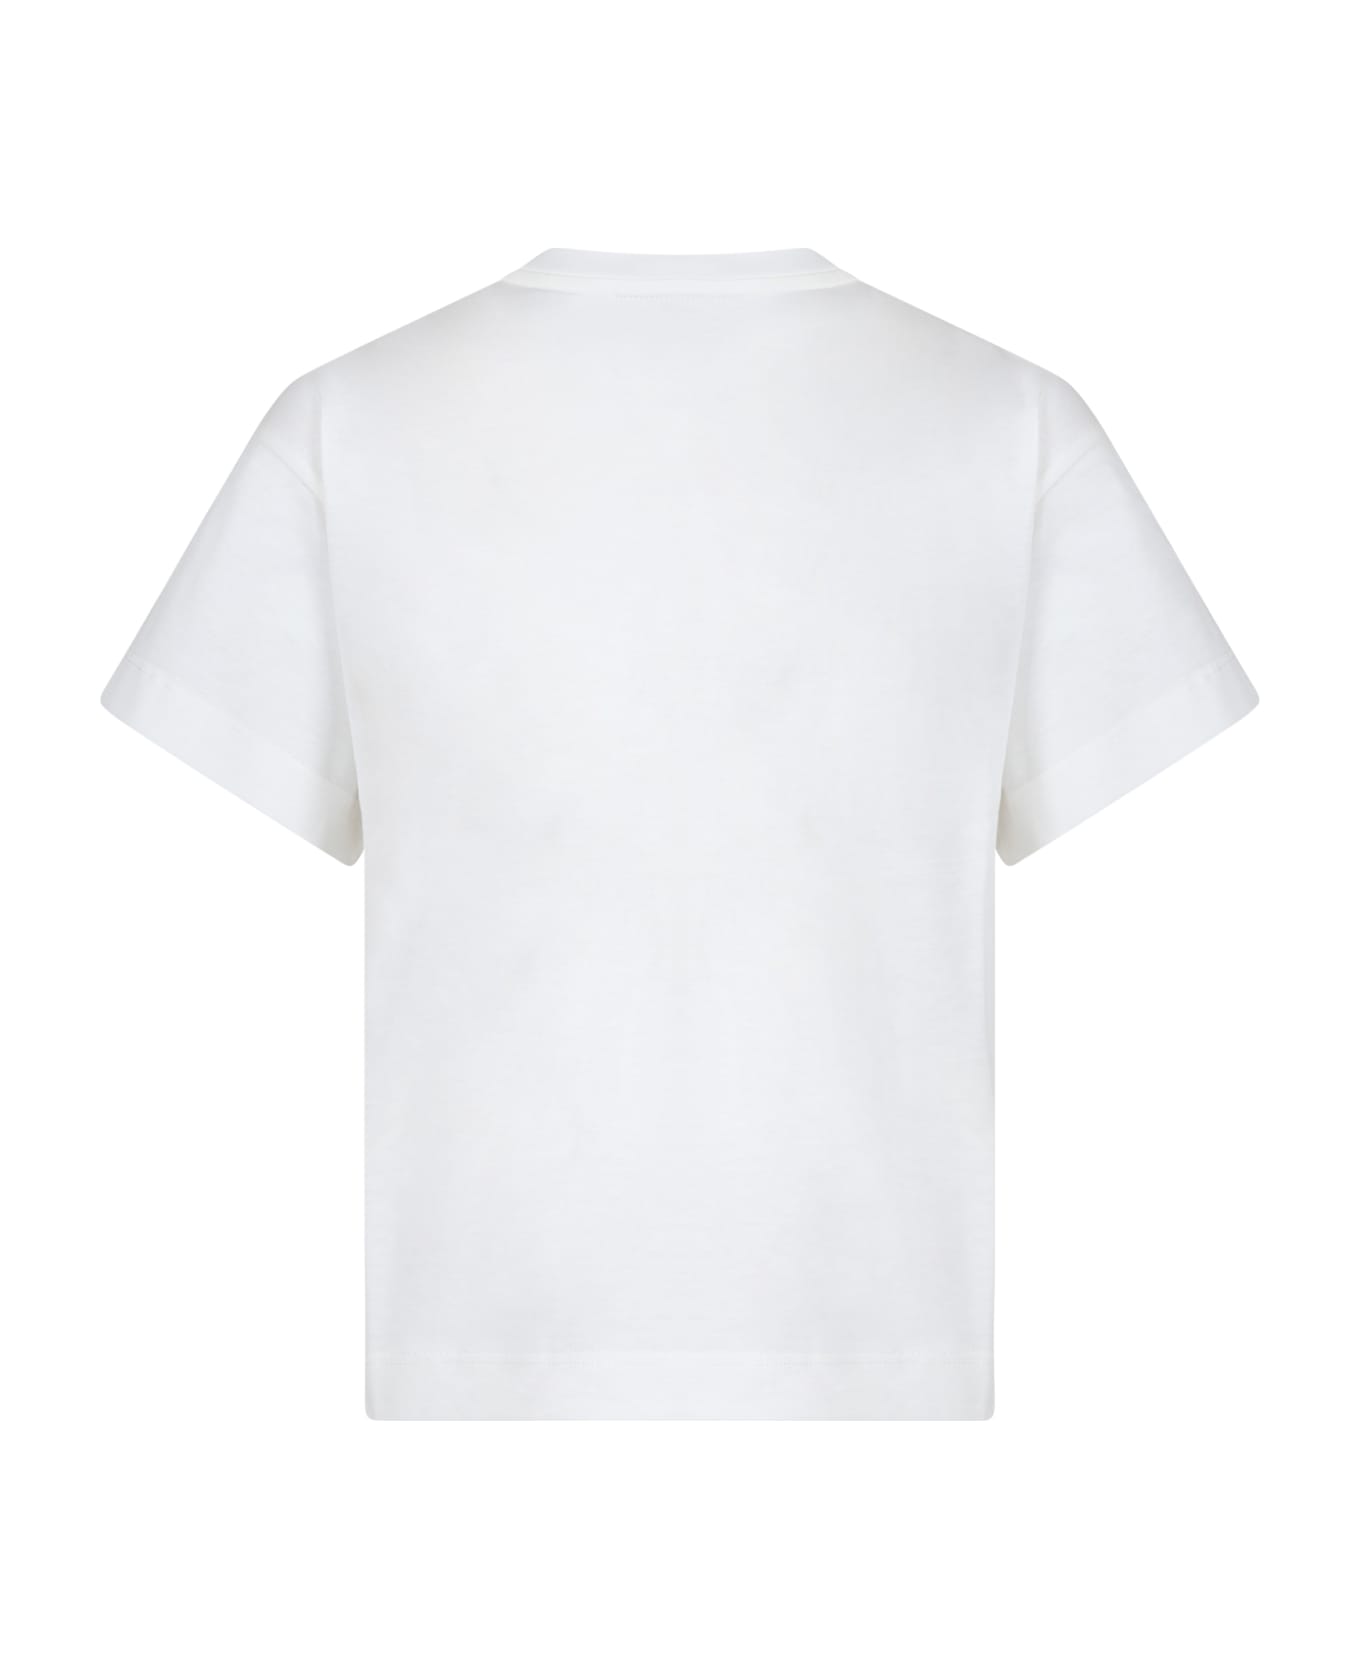 Fendi White T-shirt For Kids - White